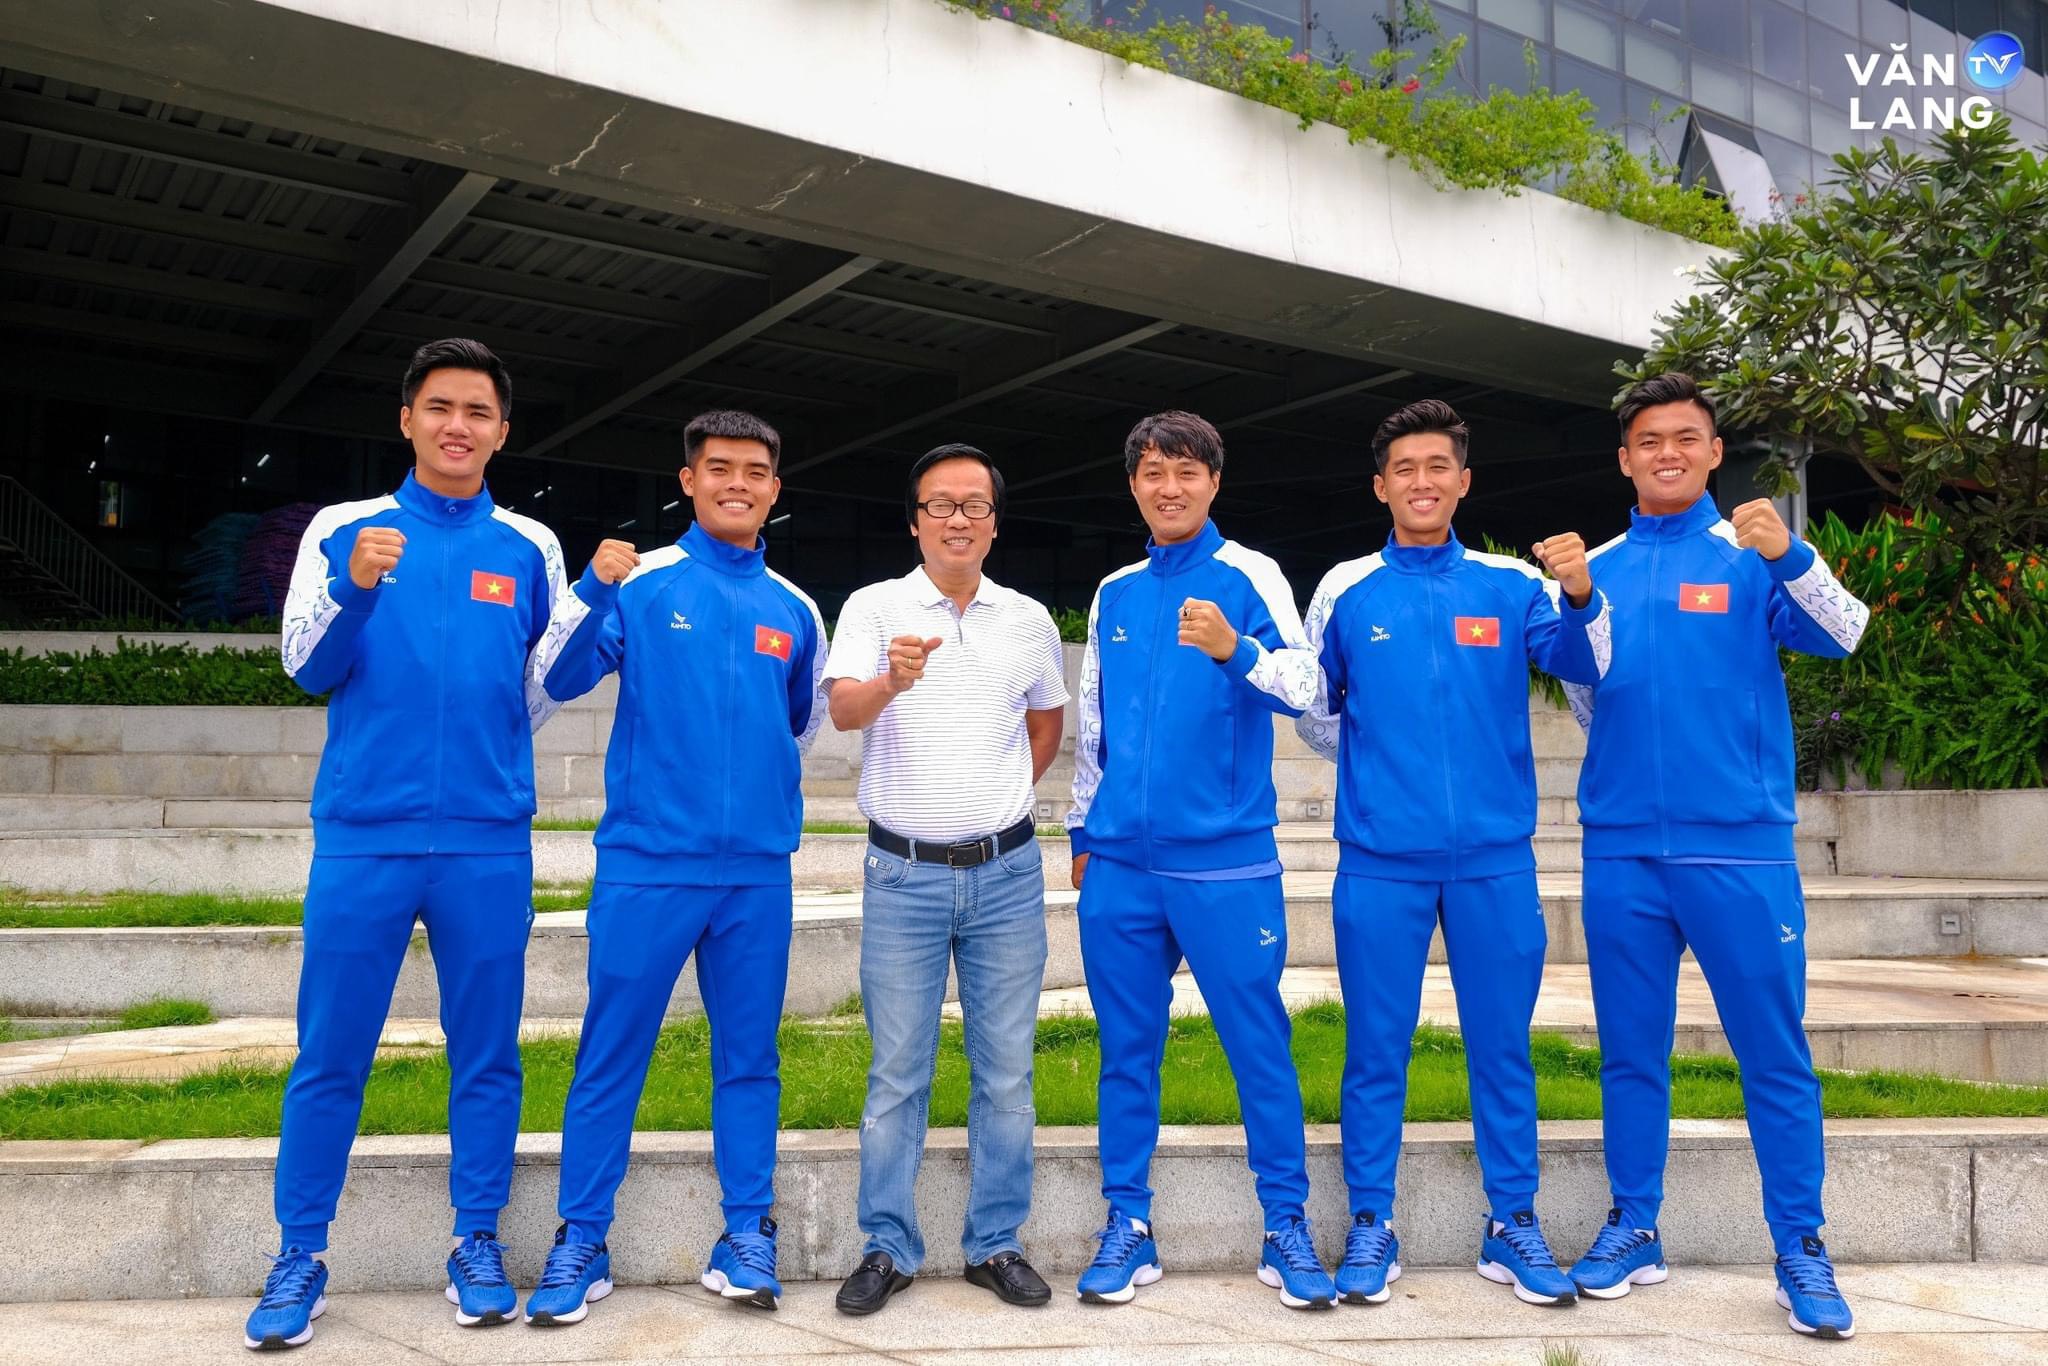 Tiến sĩ Võ Văn Tuấn mong đội bóng Trường ĐH Văn Lang sẽ là phiên bản tốt nhất của chính mình